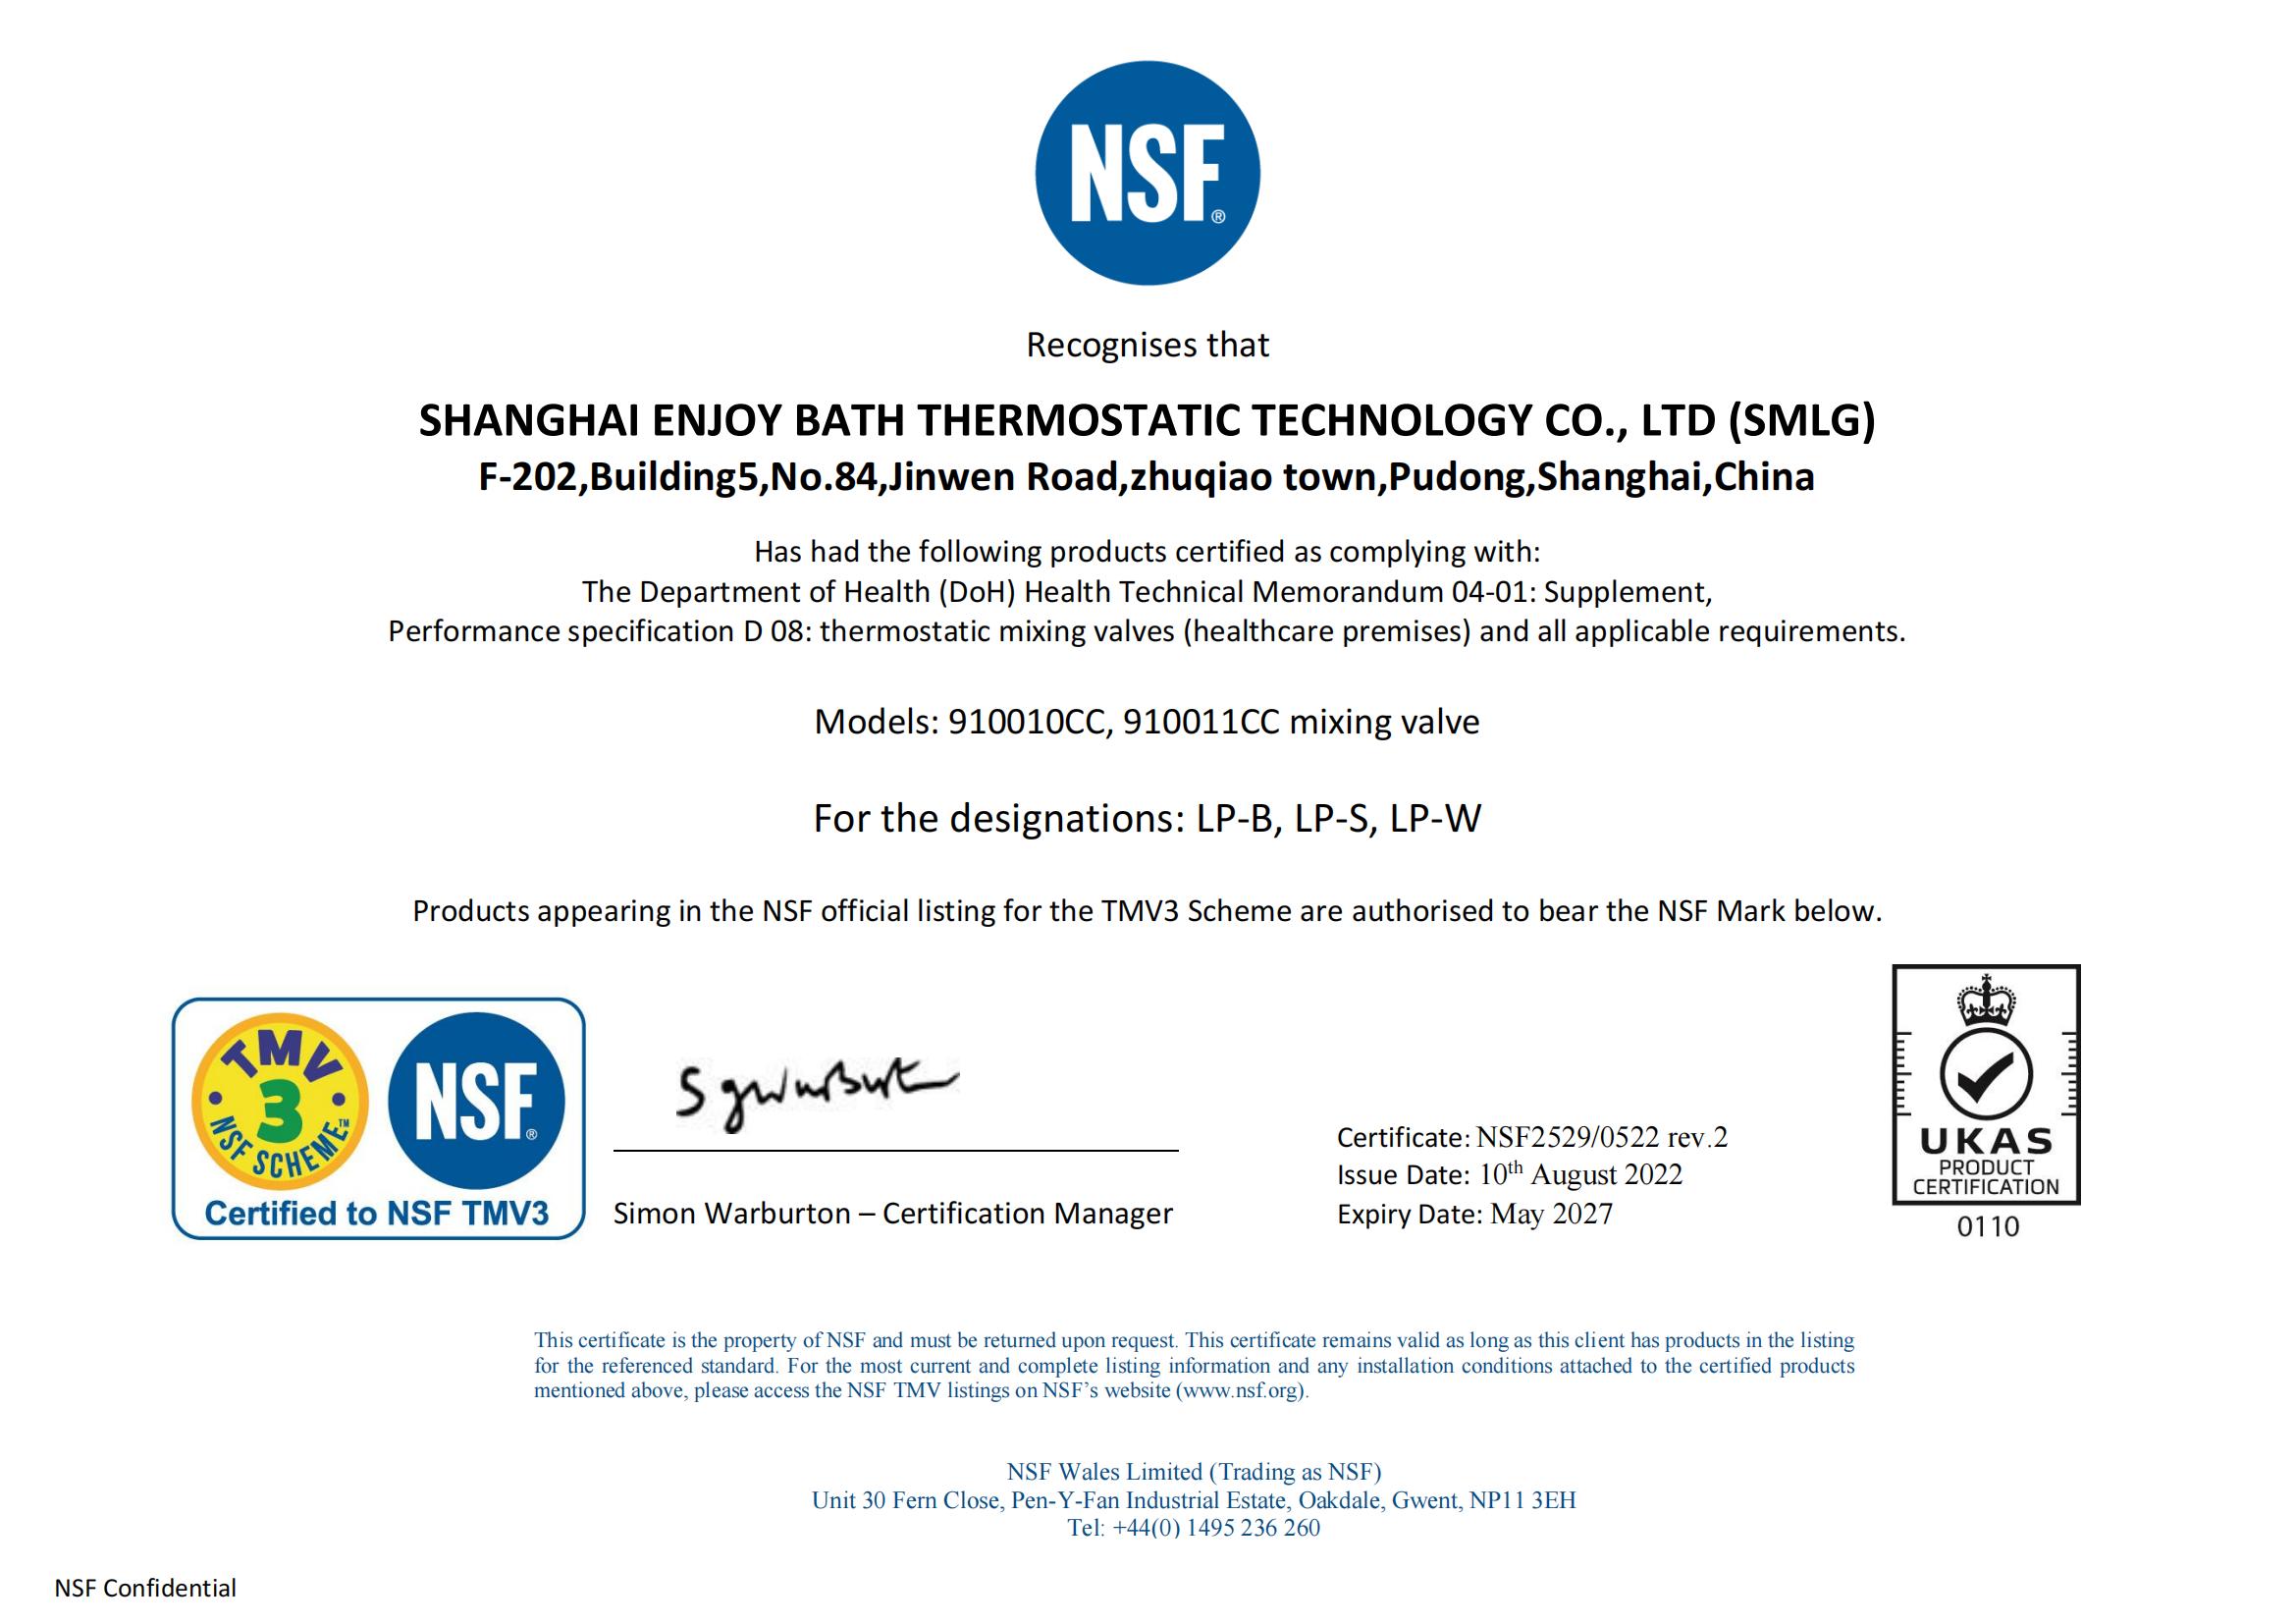 Shainghai Enjoy certificate NSF 2529 rev 2(1)_00.jpg